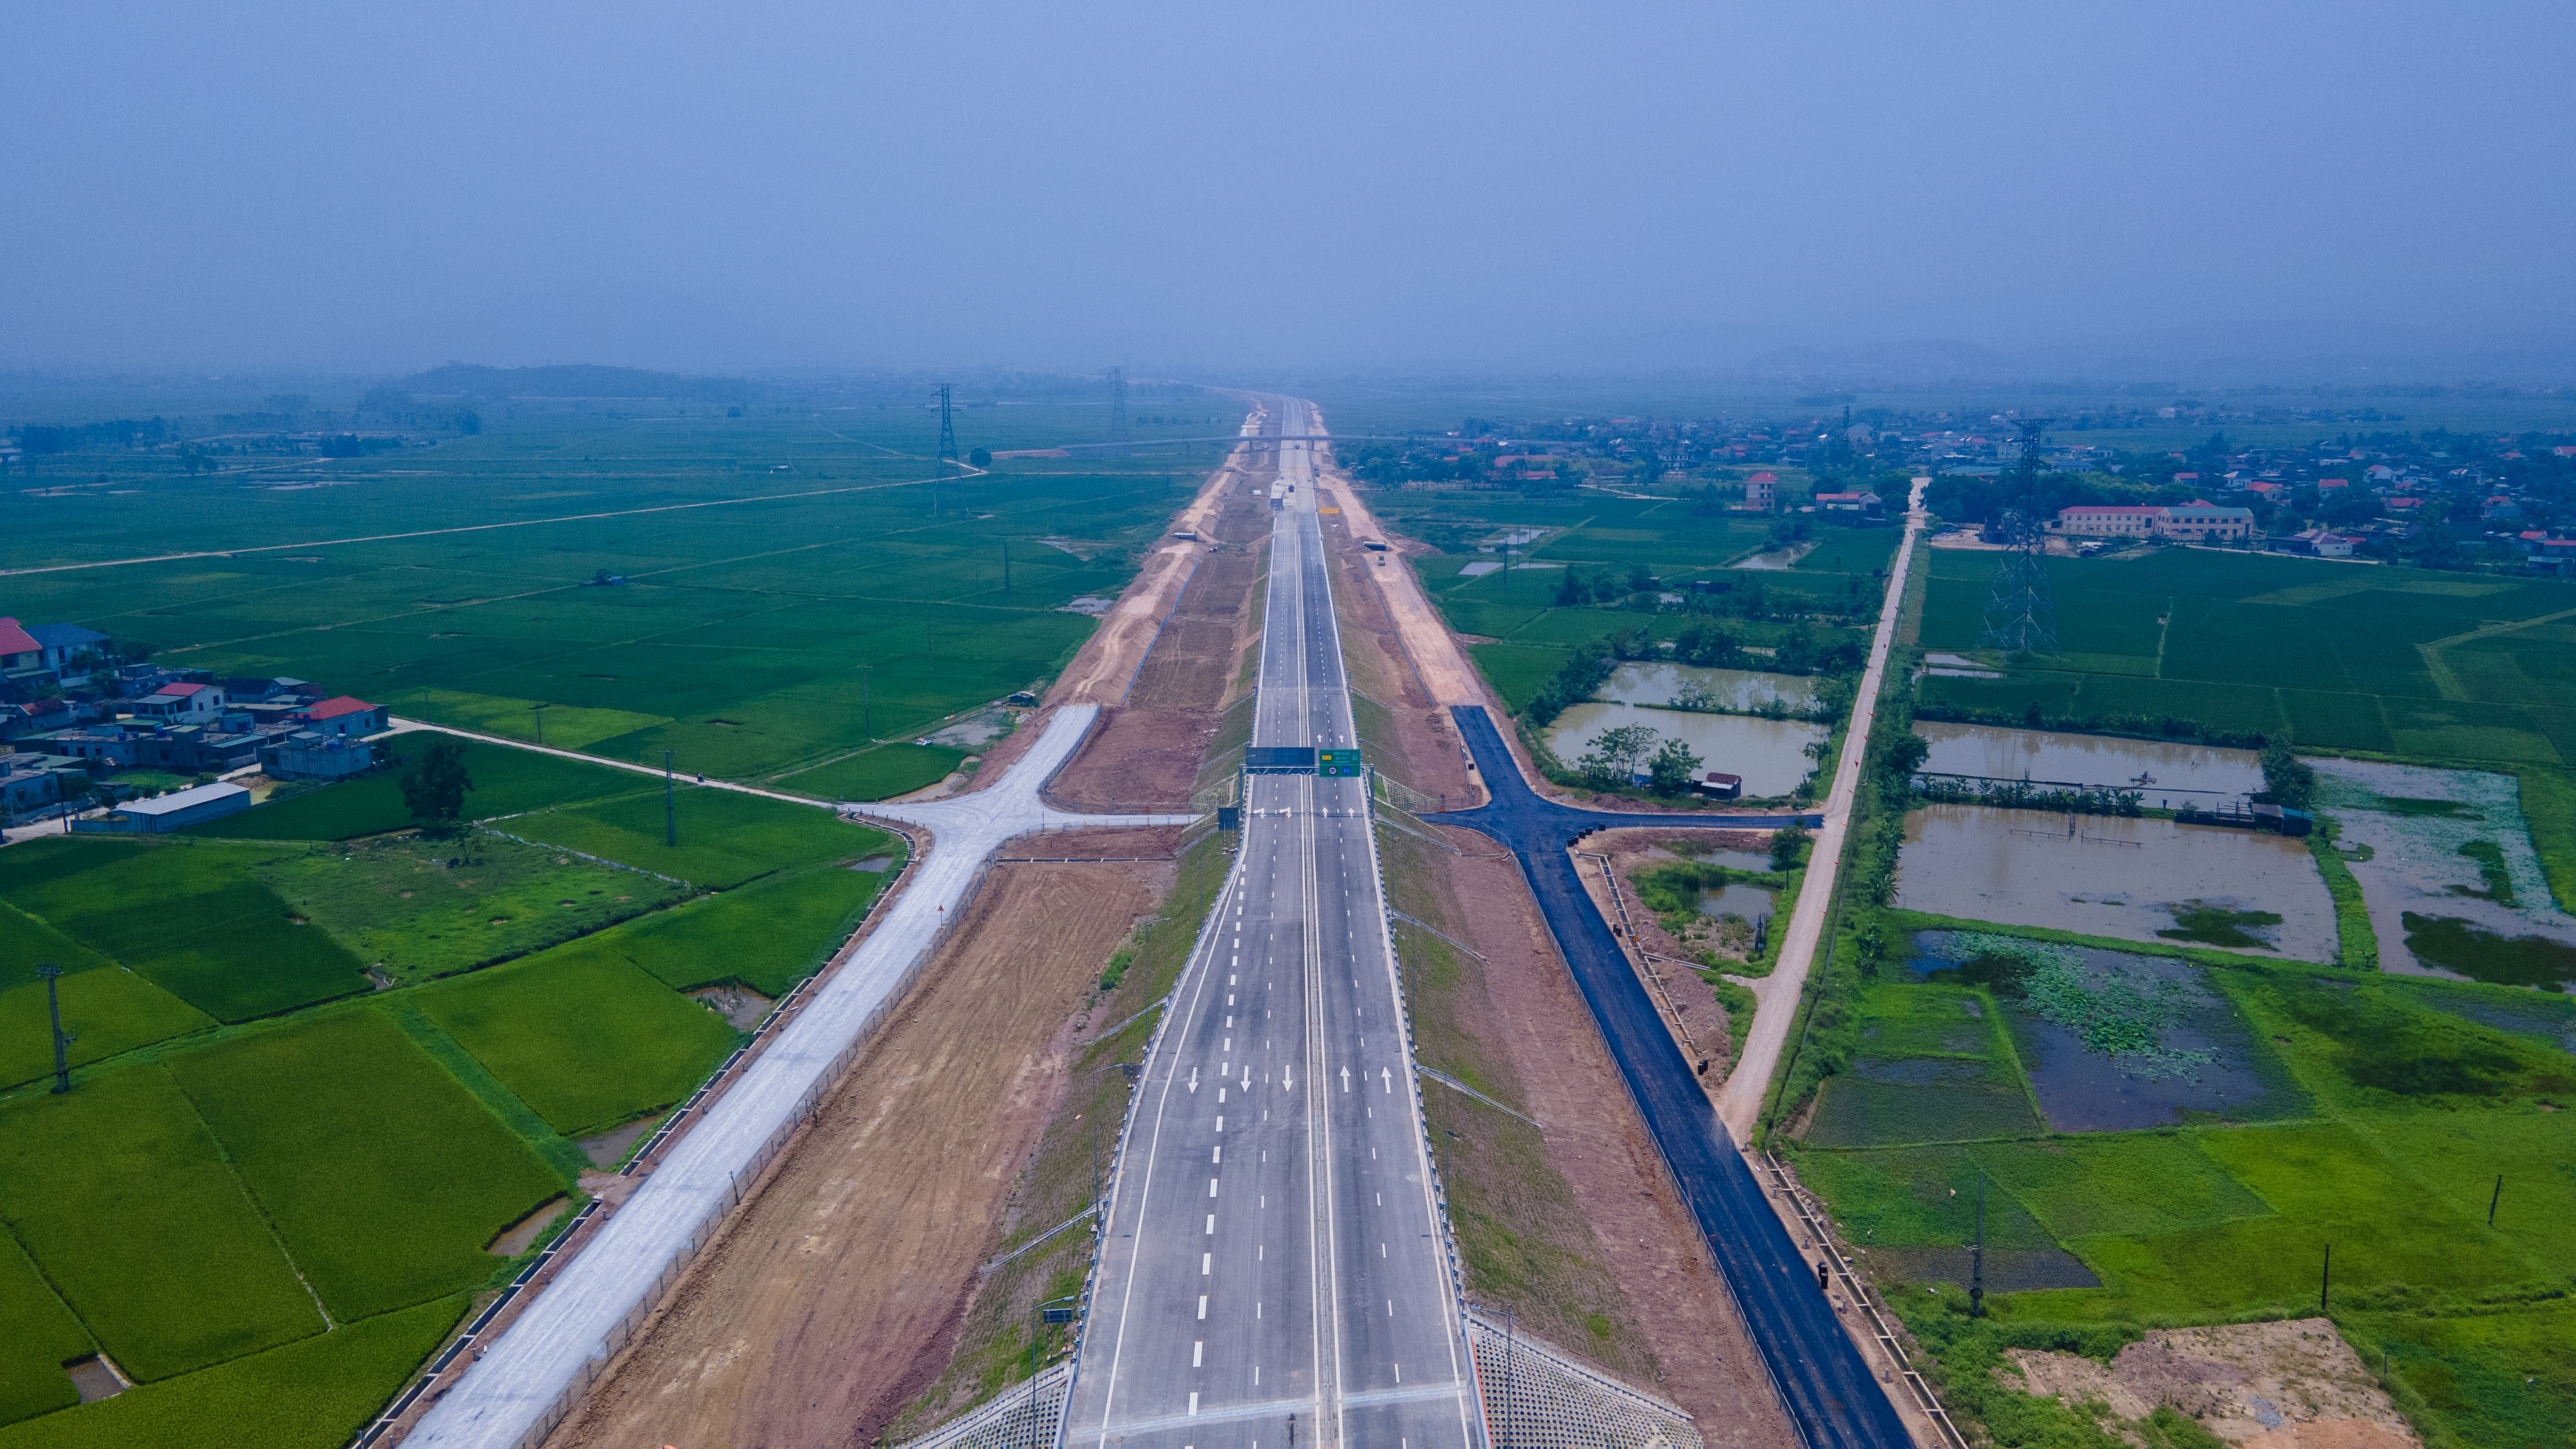 Dự án cao tốc Bắc - Nam đoạn Diễn Châu (Nghệ An) - Bãi Vọt (Hà Tĩnh) được khởi công từ năm 2021. Dự án có tổng chiều dài hơn 49km đi qua tỉnh Nghệ An (44,4km) và tỉnh Hà Tĩnh (4,9km).